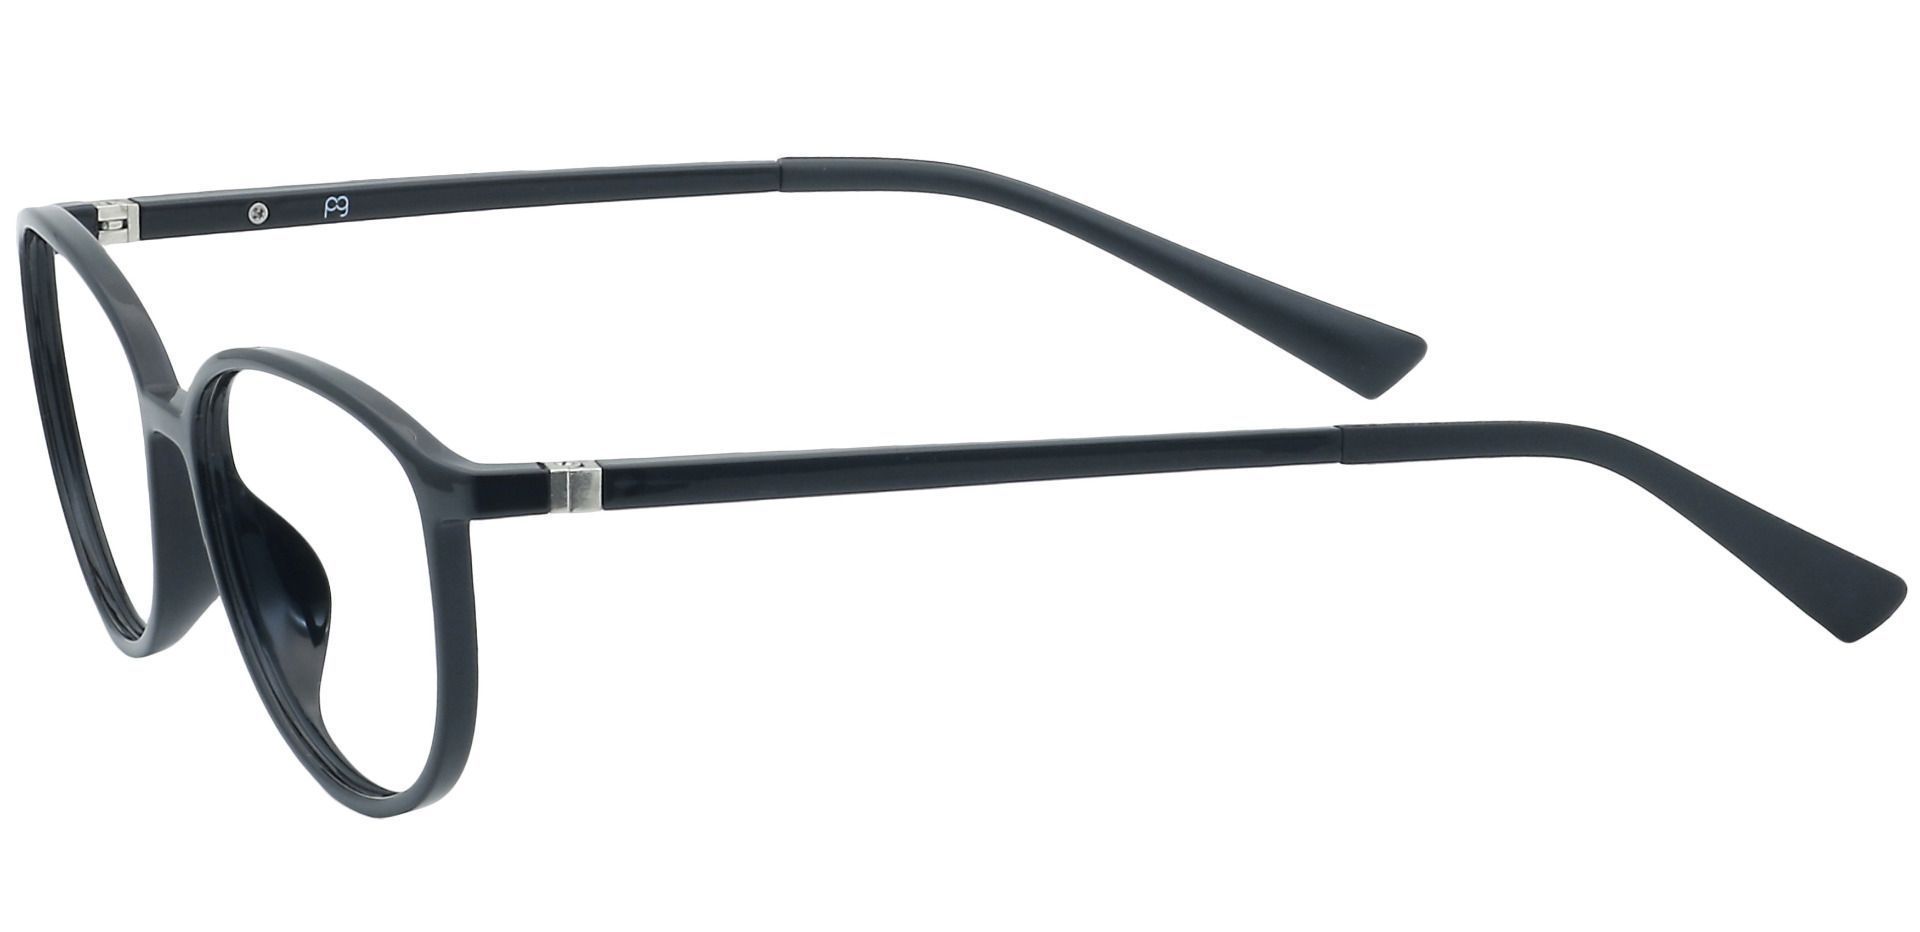 Melbourne Oval Eyeglasses Frame - Black